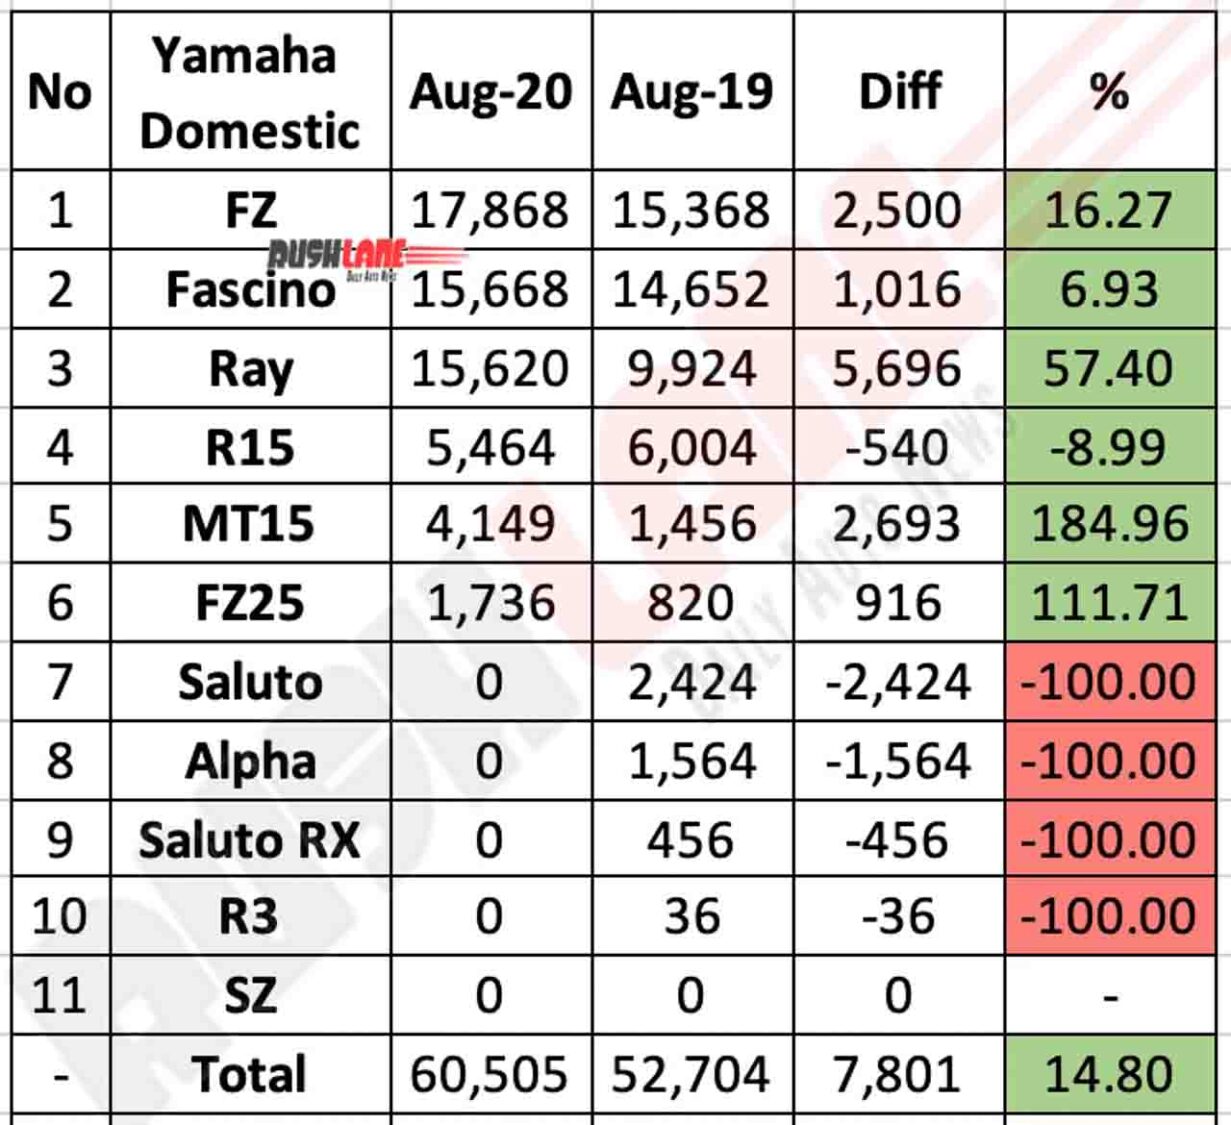 Yamaha Domestic Sales Aug 2020